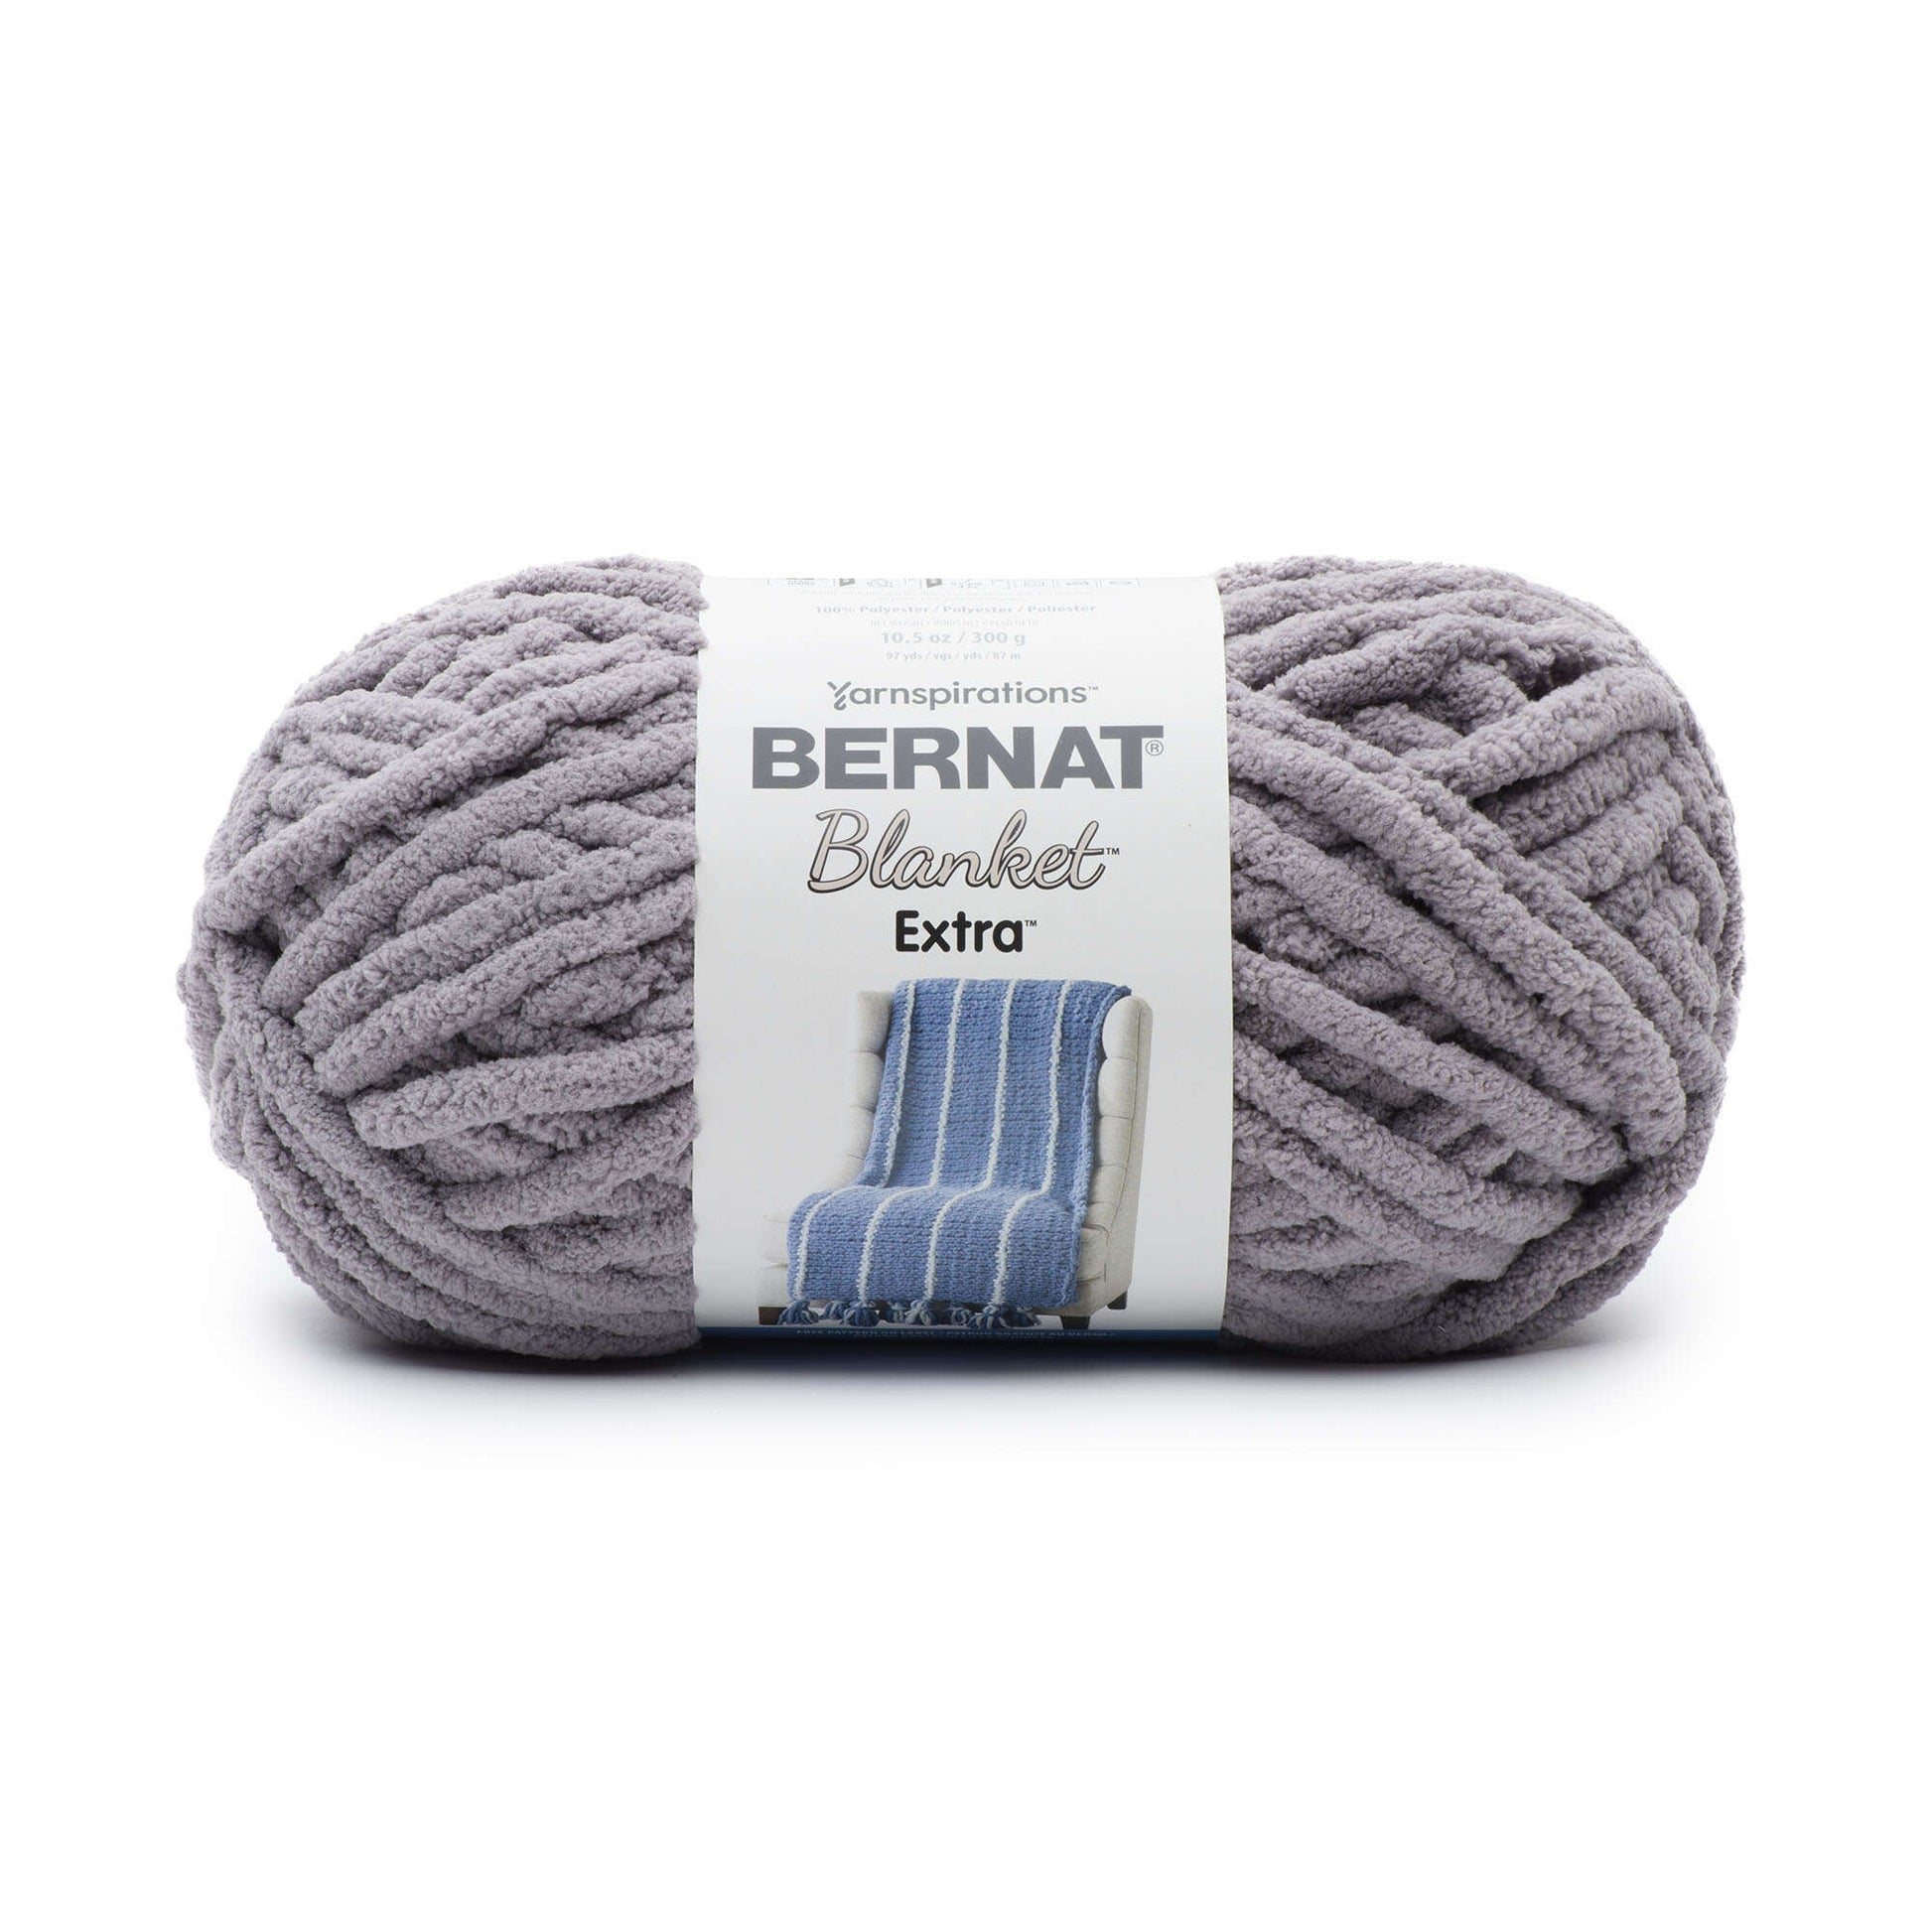 Bernat Blanket Big Yarn (300g/10.5oz), Yarnspirations